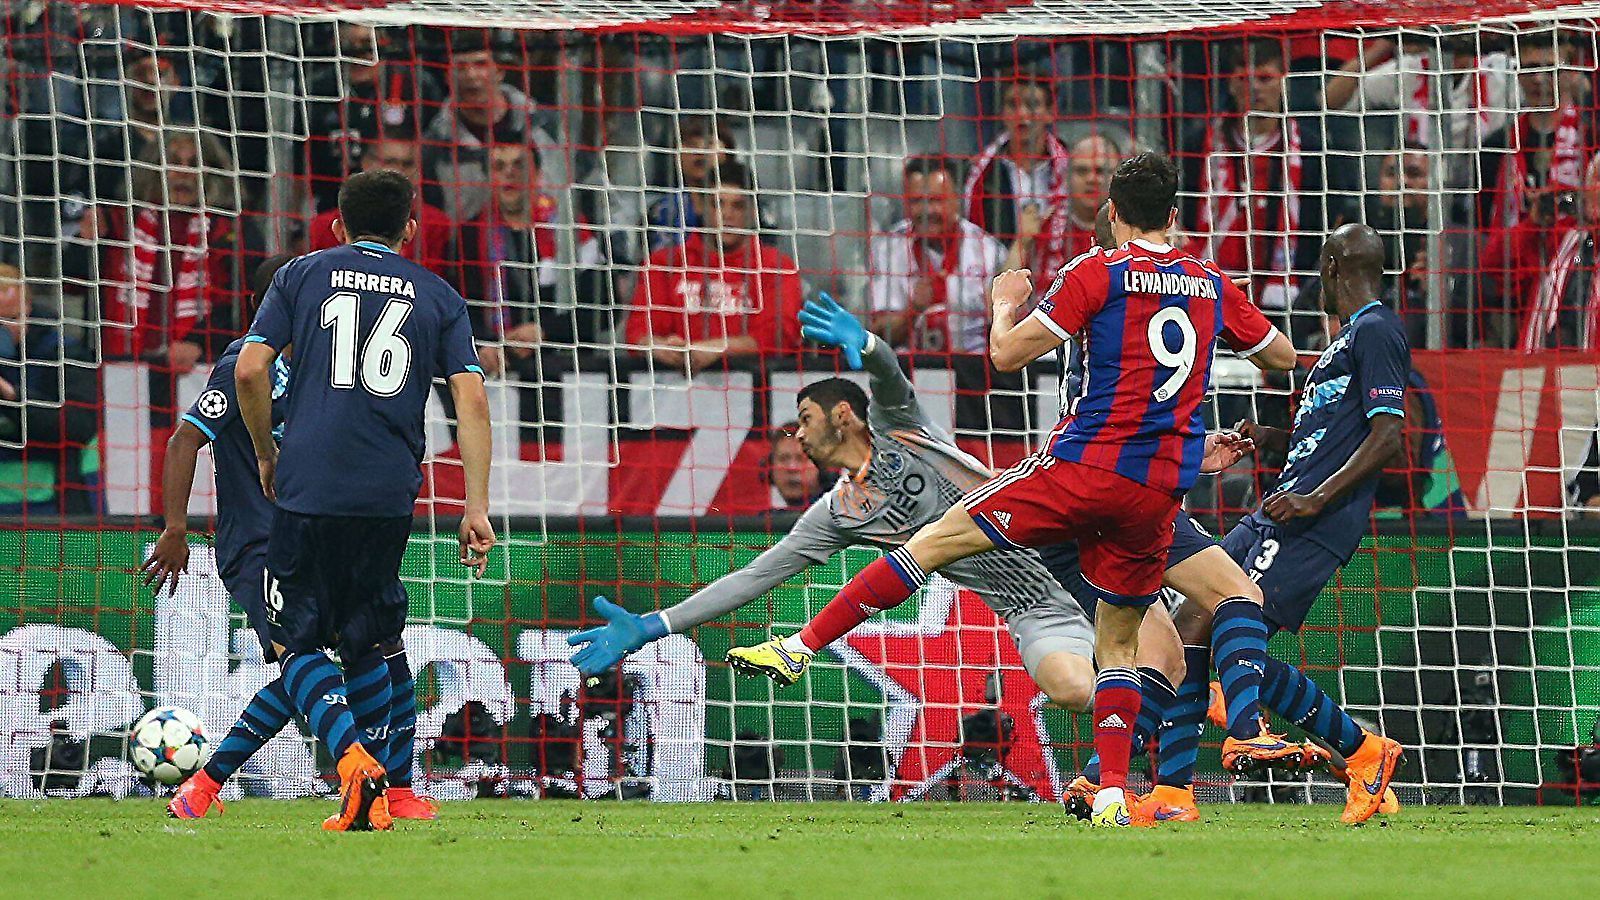 <strong>2014/2015, Viertelfinale: FC Bayern München - FC Porto 6:1 (nach 1:3)</strong><br>Nach dem 1:3 im Hinspiel, in dem vor allem Ricardo Quaresma kaum zu kontrollieren war, drehten die Münchner im Rückspiel auf. Nach 40 Minuten stand bereits ein 5:0 auf der Anzeigetafel, letztlich siegte der deutsche Rekordmeister mit 6:1. Spoiler: Es war das bislang letzte Mal, dass der FCB nach einer Hinspiel-Pleite die nächste Runde erreichte.